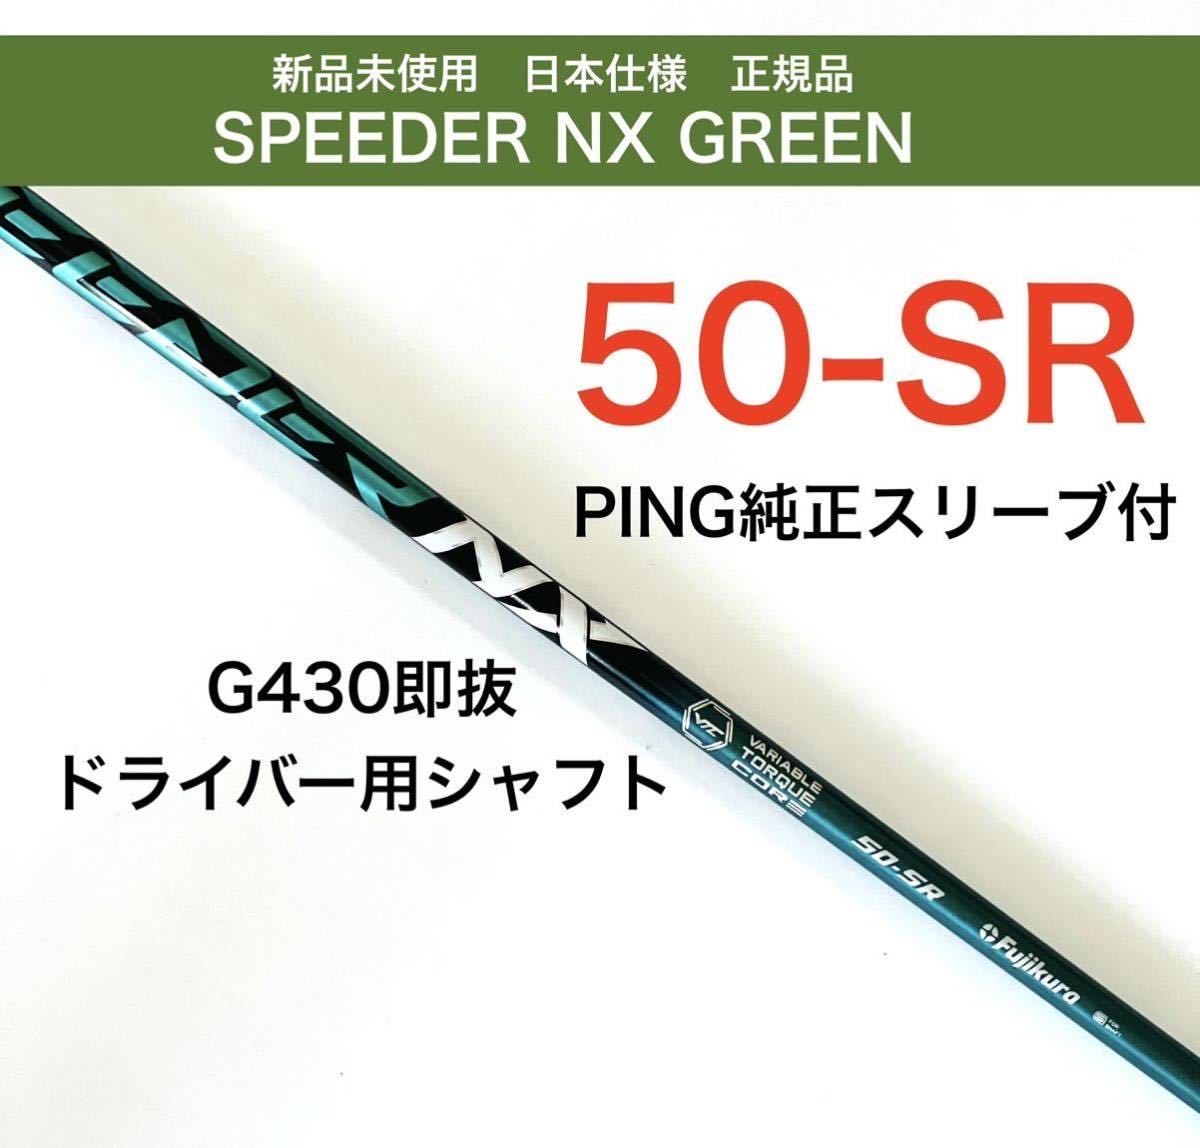 新品 speeder nx グリーン 50-SR ピンスリーブ ドライバシャフト kenza.re